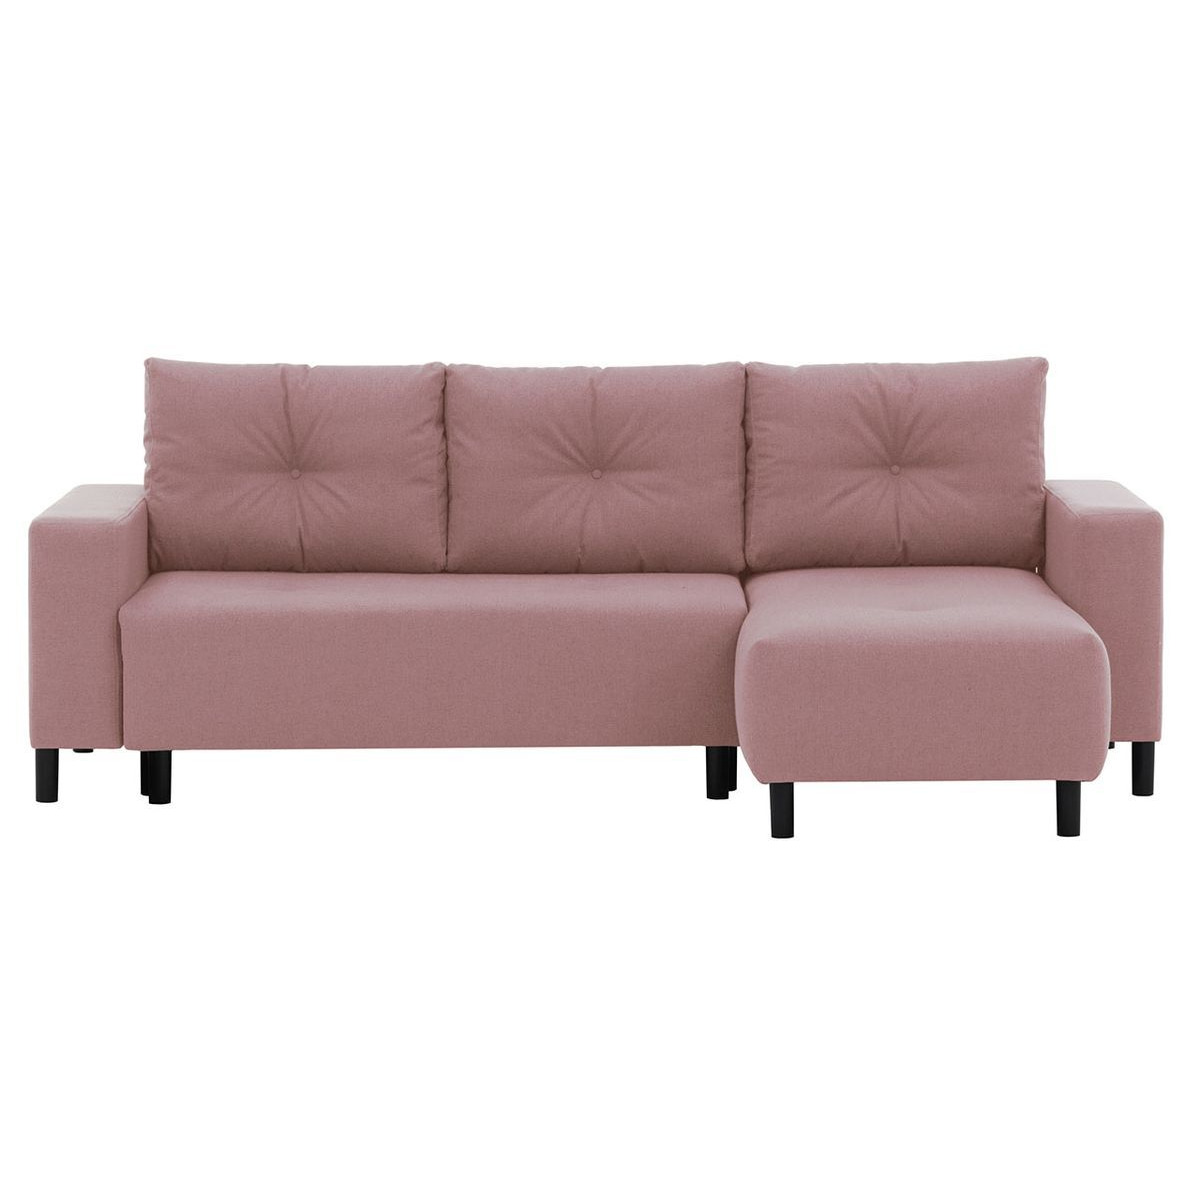 Finder Corner Sofa Bed, pastel pink - image 1